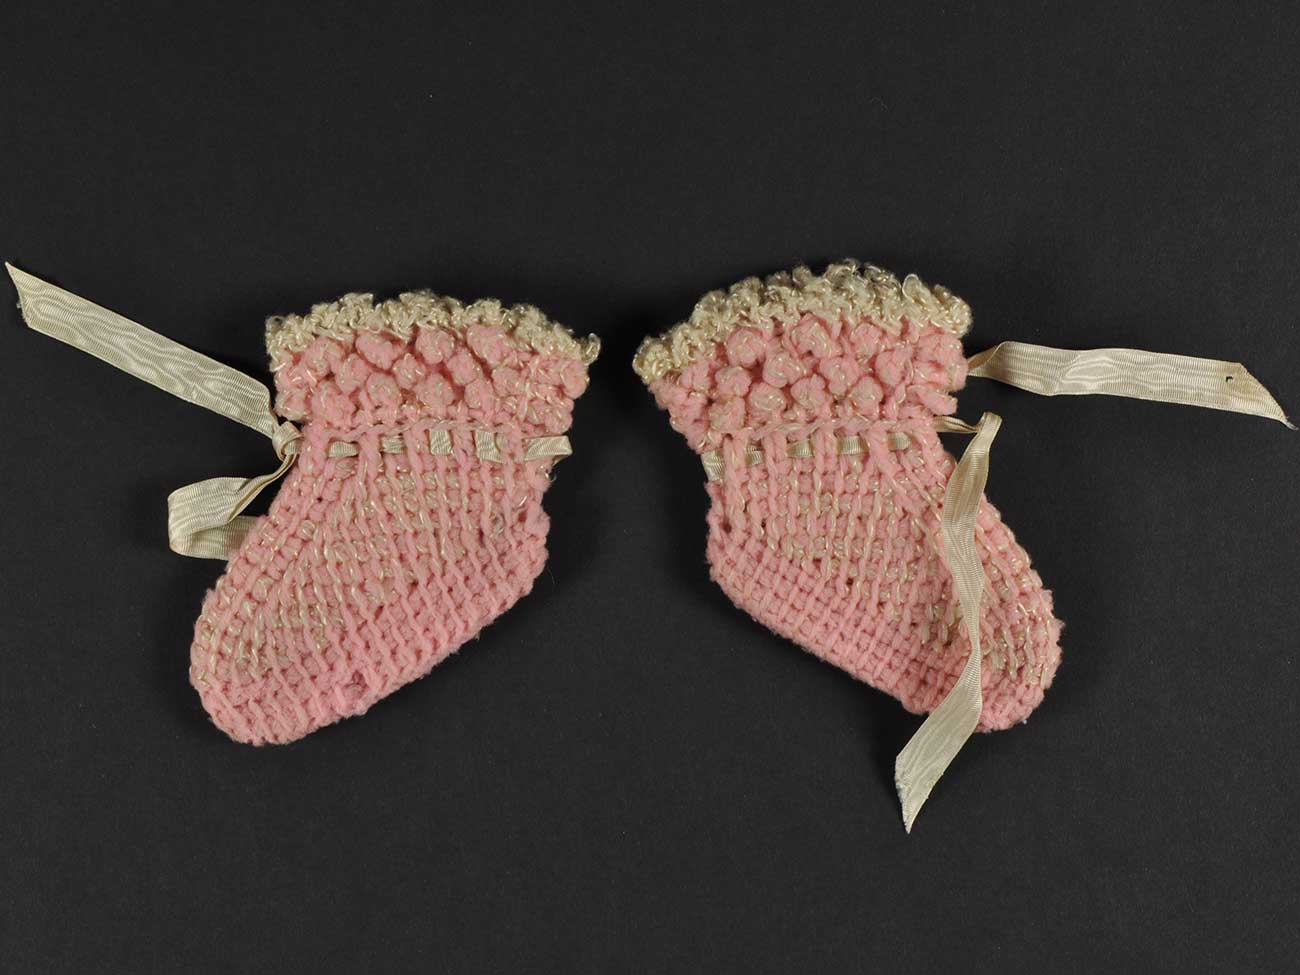 Chaussons de bébé, laine tricotée et ruban de satin, fin du 19e – début du 20e siècle, Mucem © Mucem 